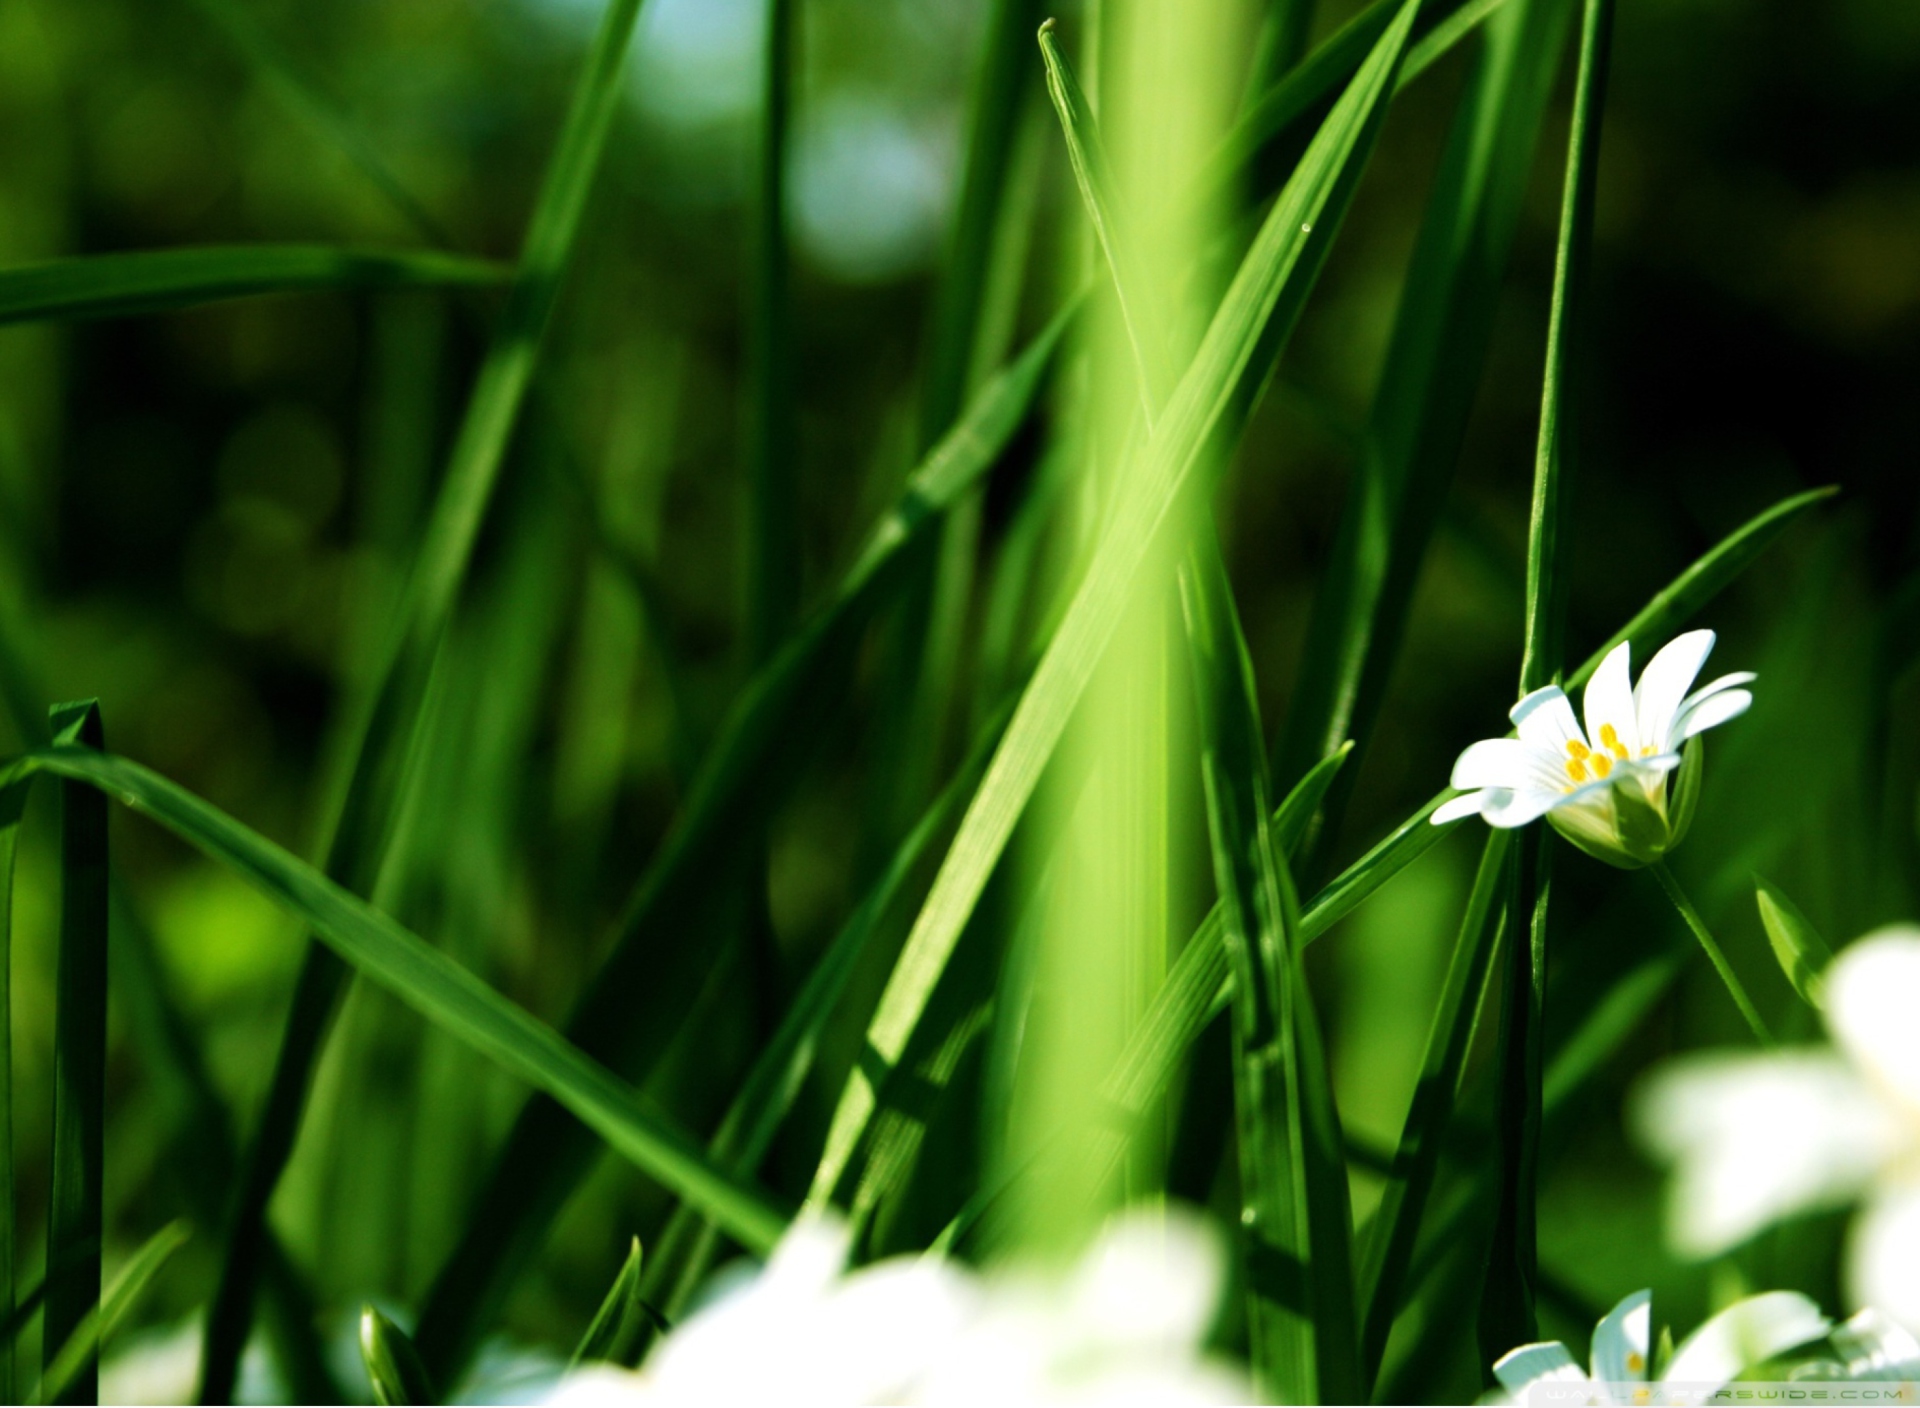 Обои Grass And White Flowers 1920x1408